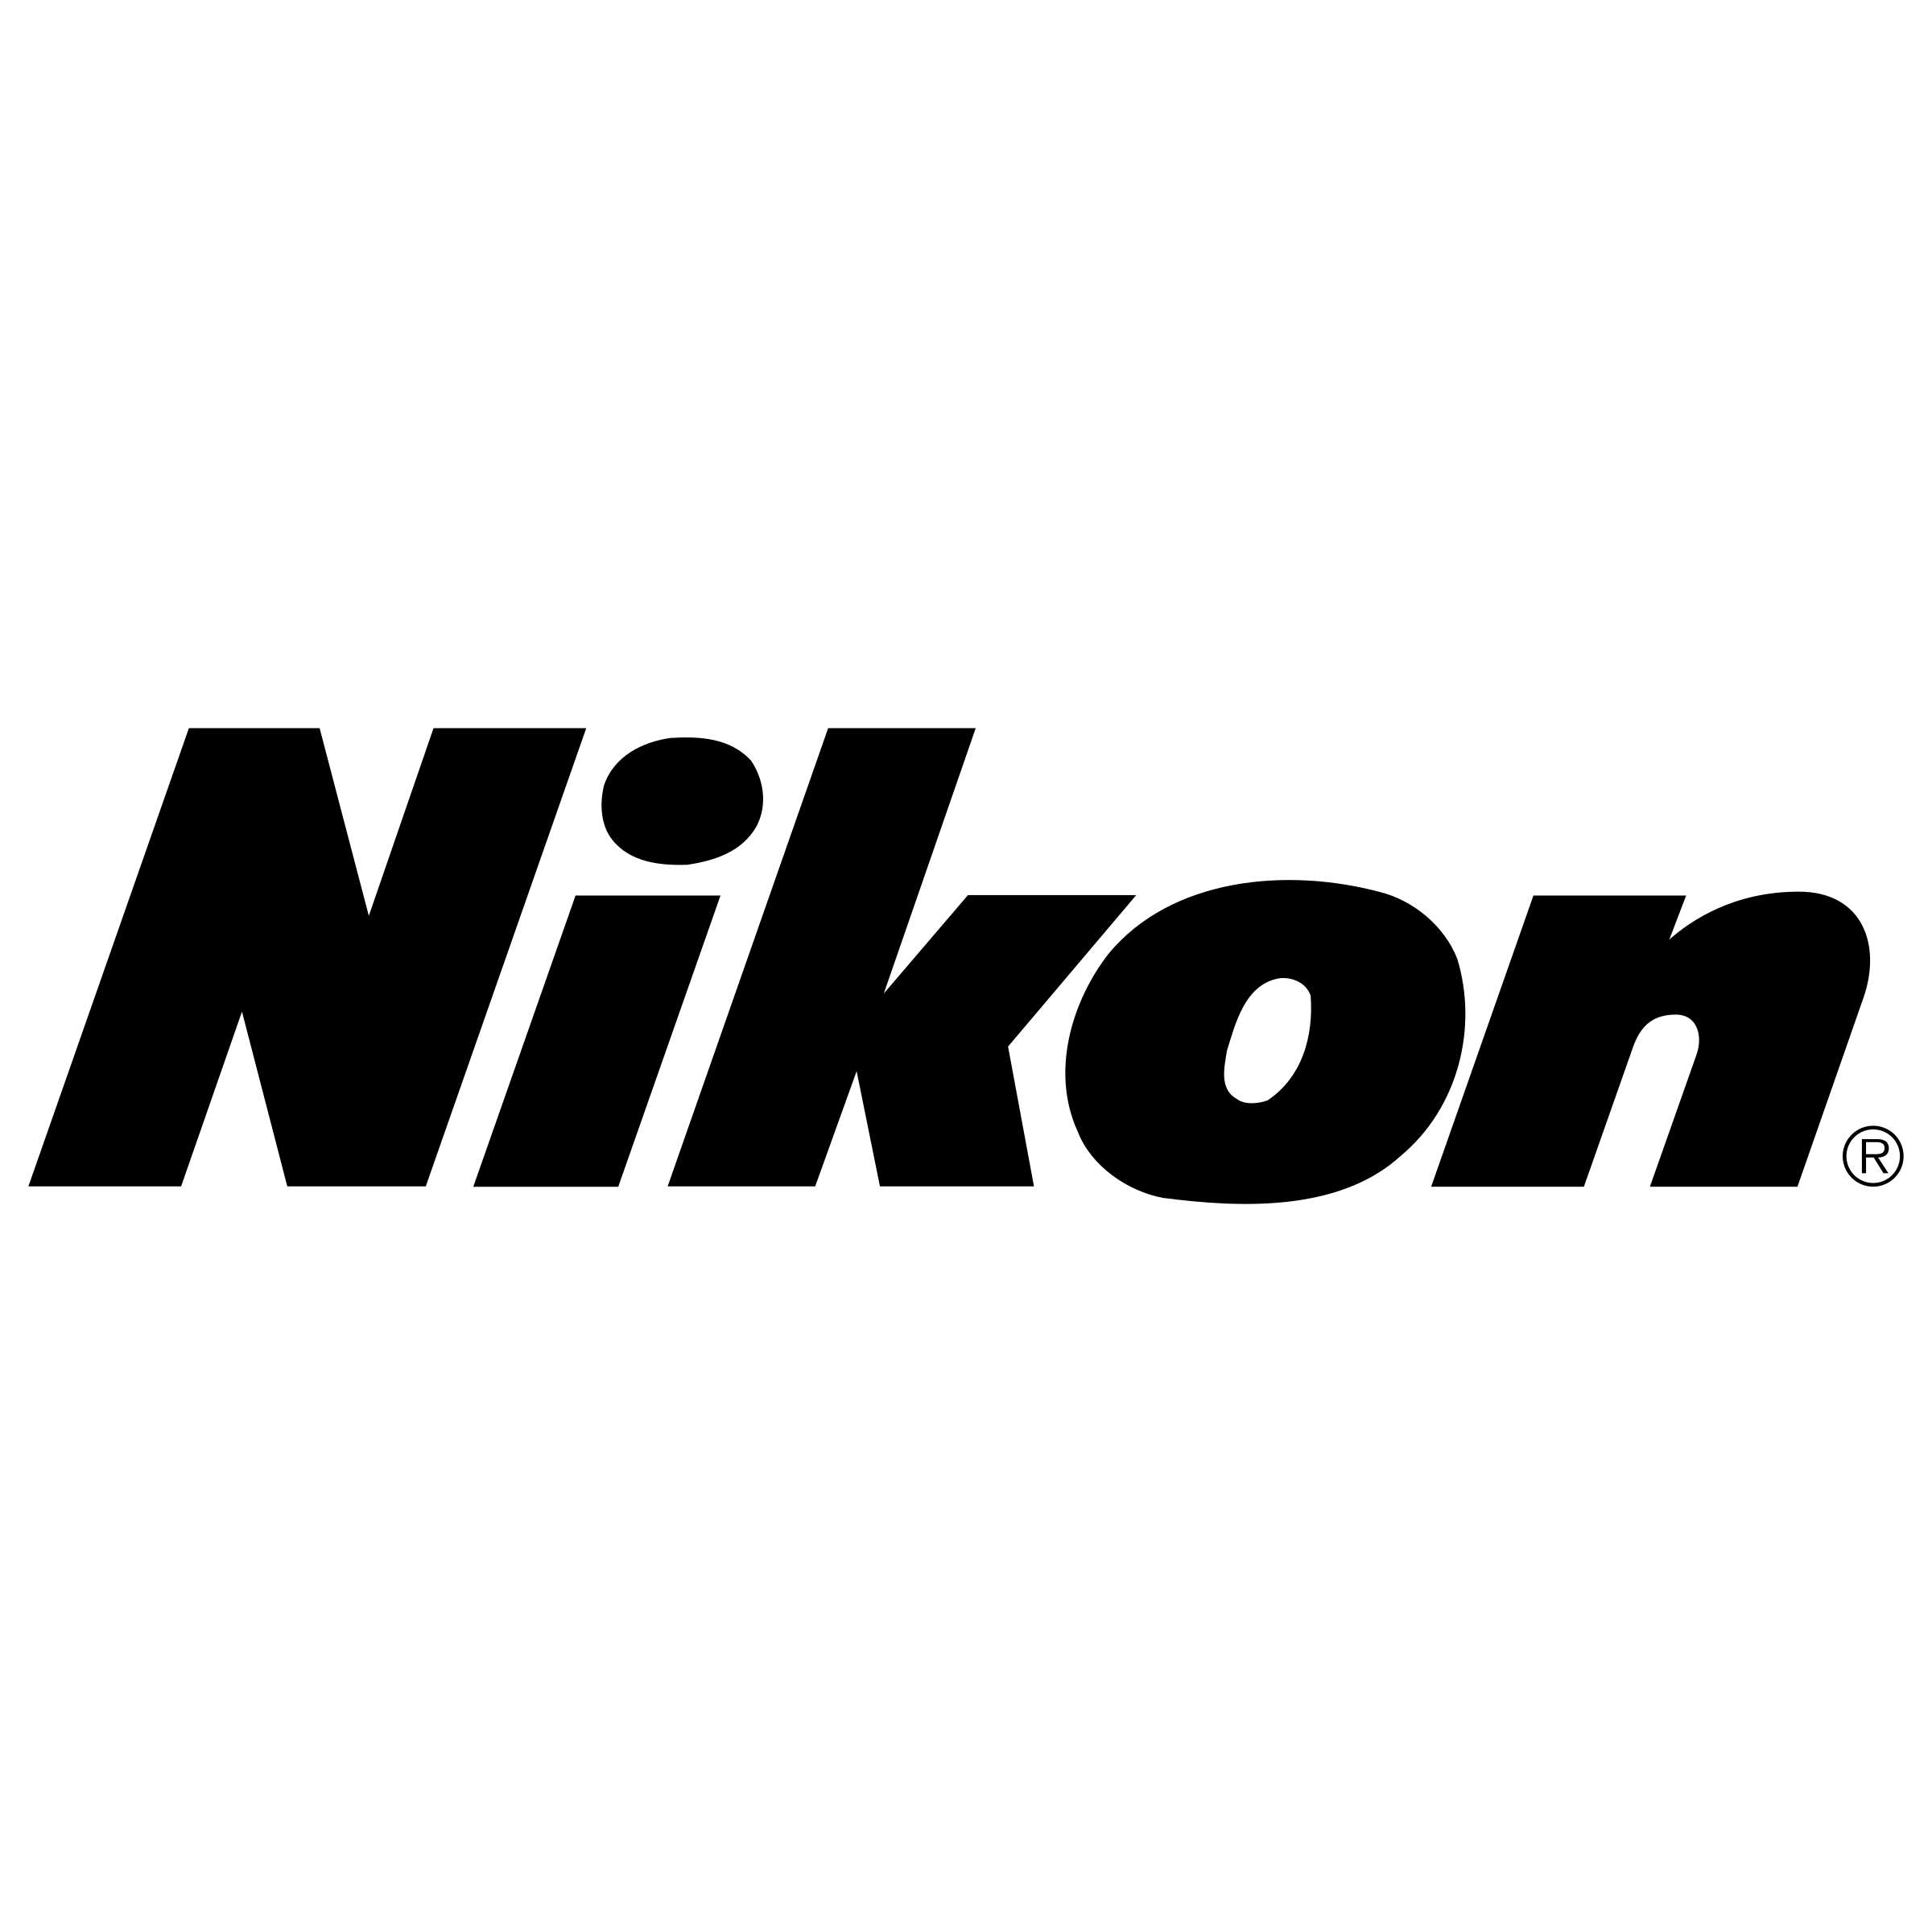 Logo Nikon Png - KibrisPDR